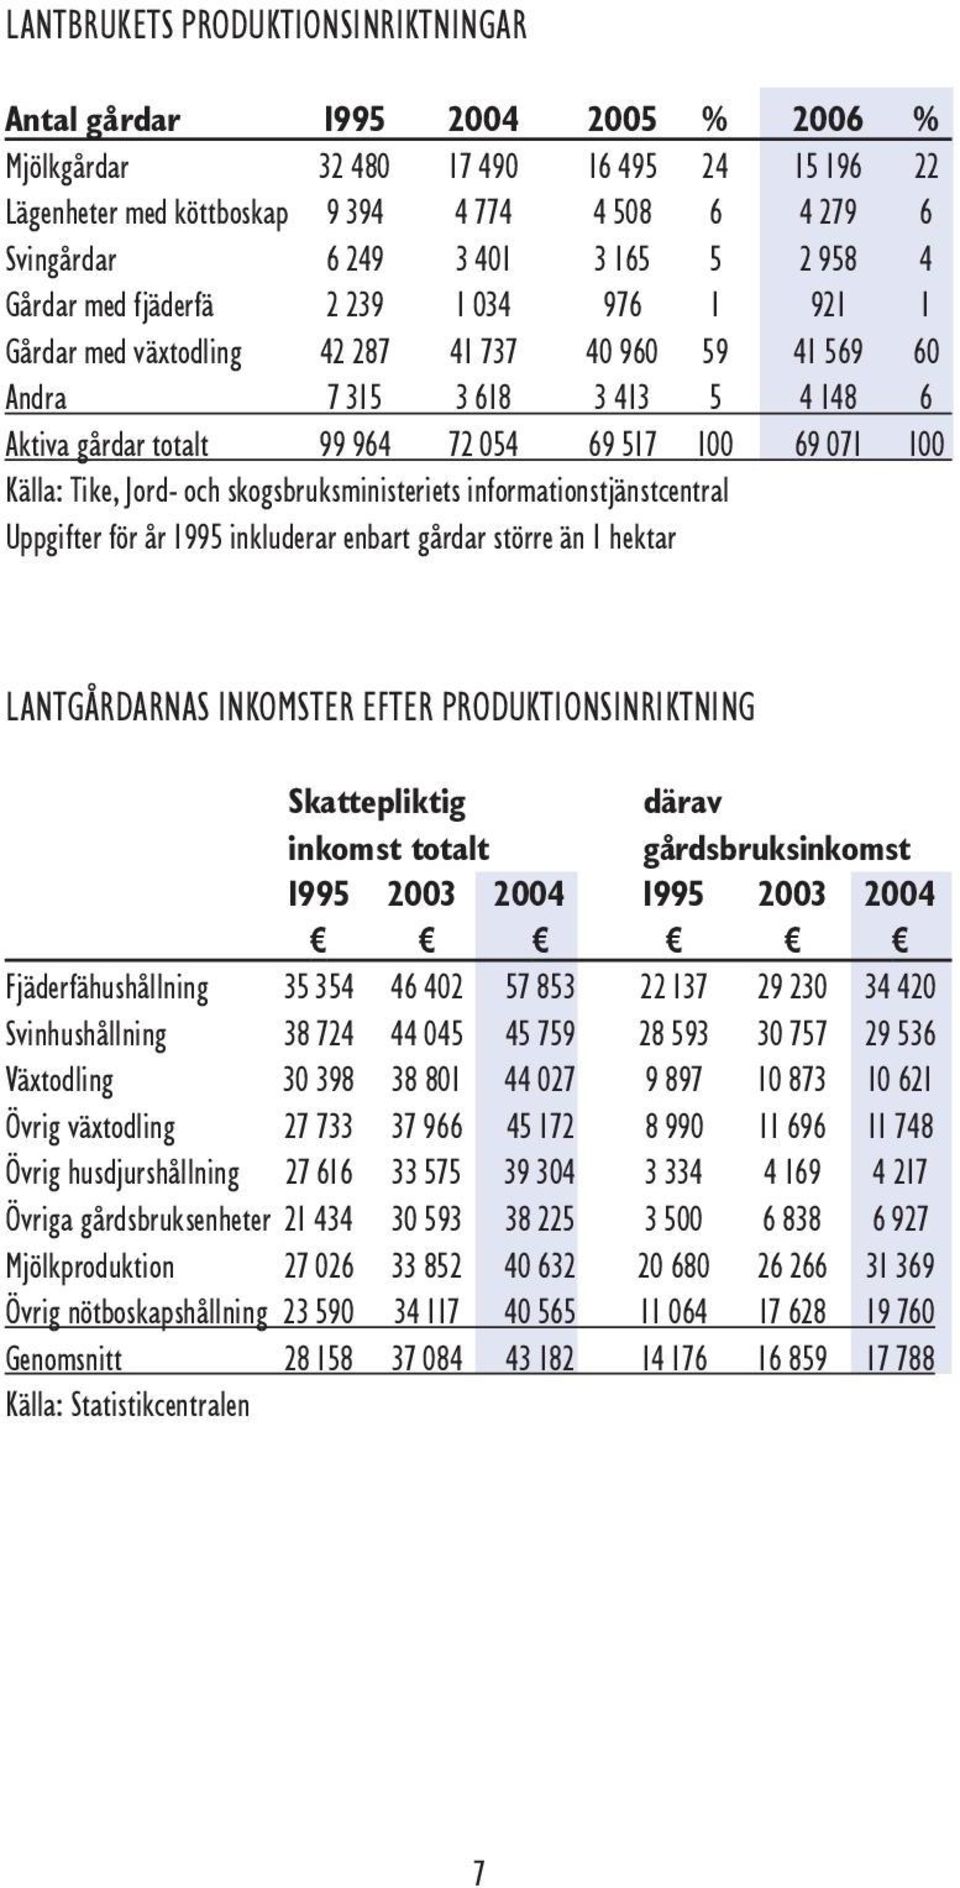 071 100 Källa: Tike, Jord- och skogsbruksministeriets informationstjänstcentral Uppgifter för år 1995 inkluderar enbart gårdar större än 1 hektar LANTGÅRDARNAS INKOMSTER EFTER PRODUKTIONSINRIKTNING